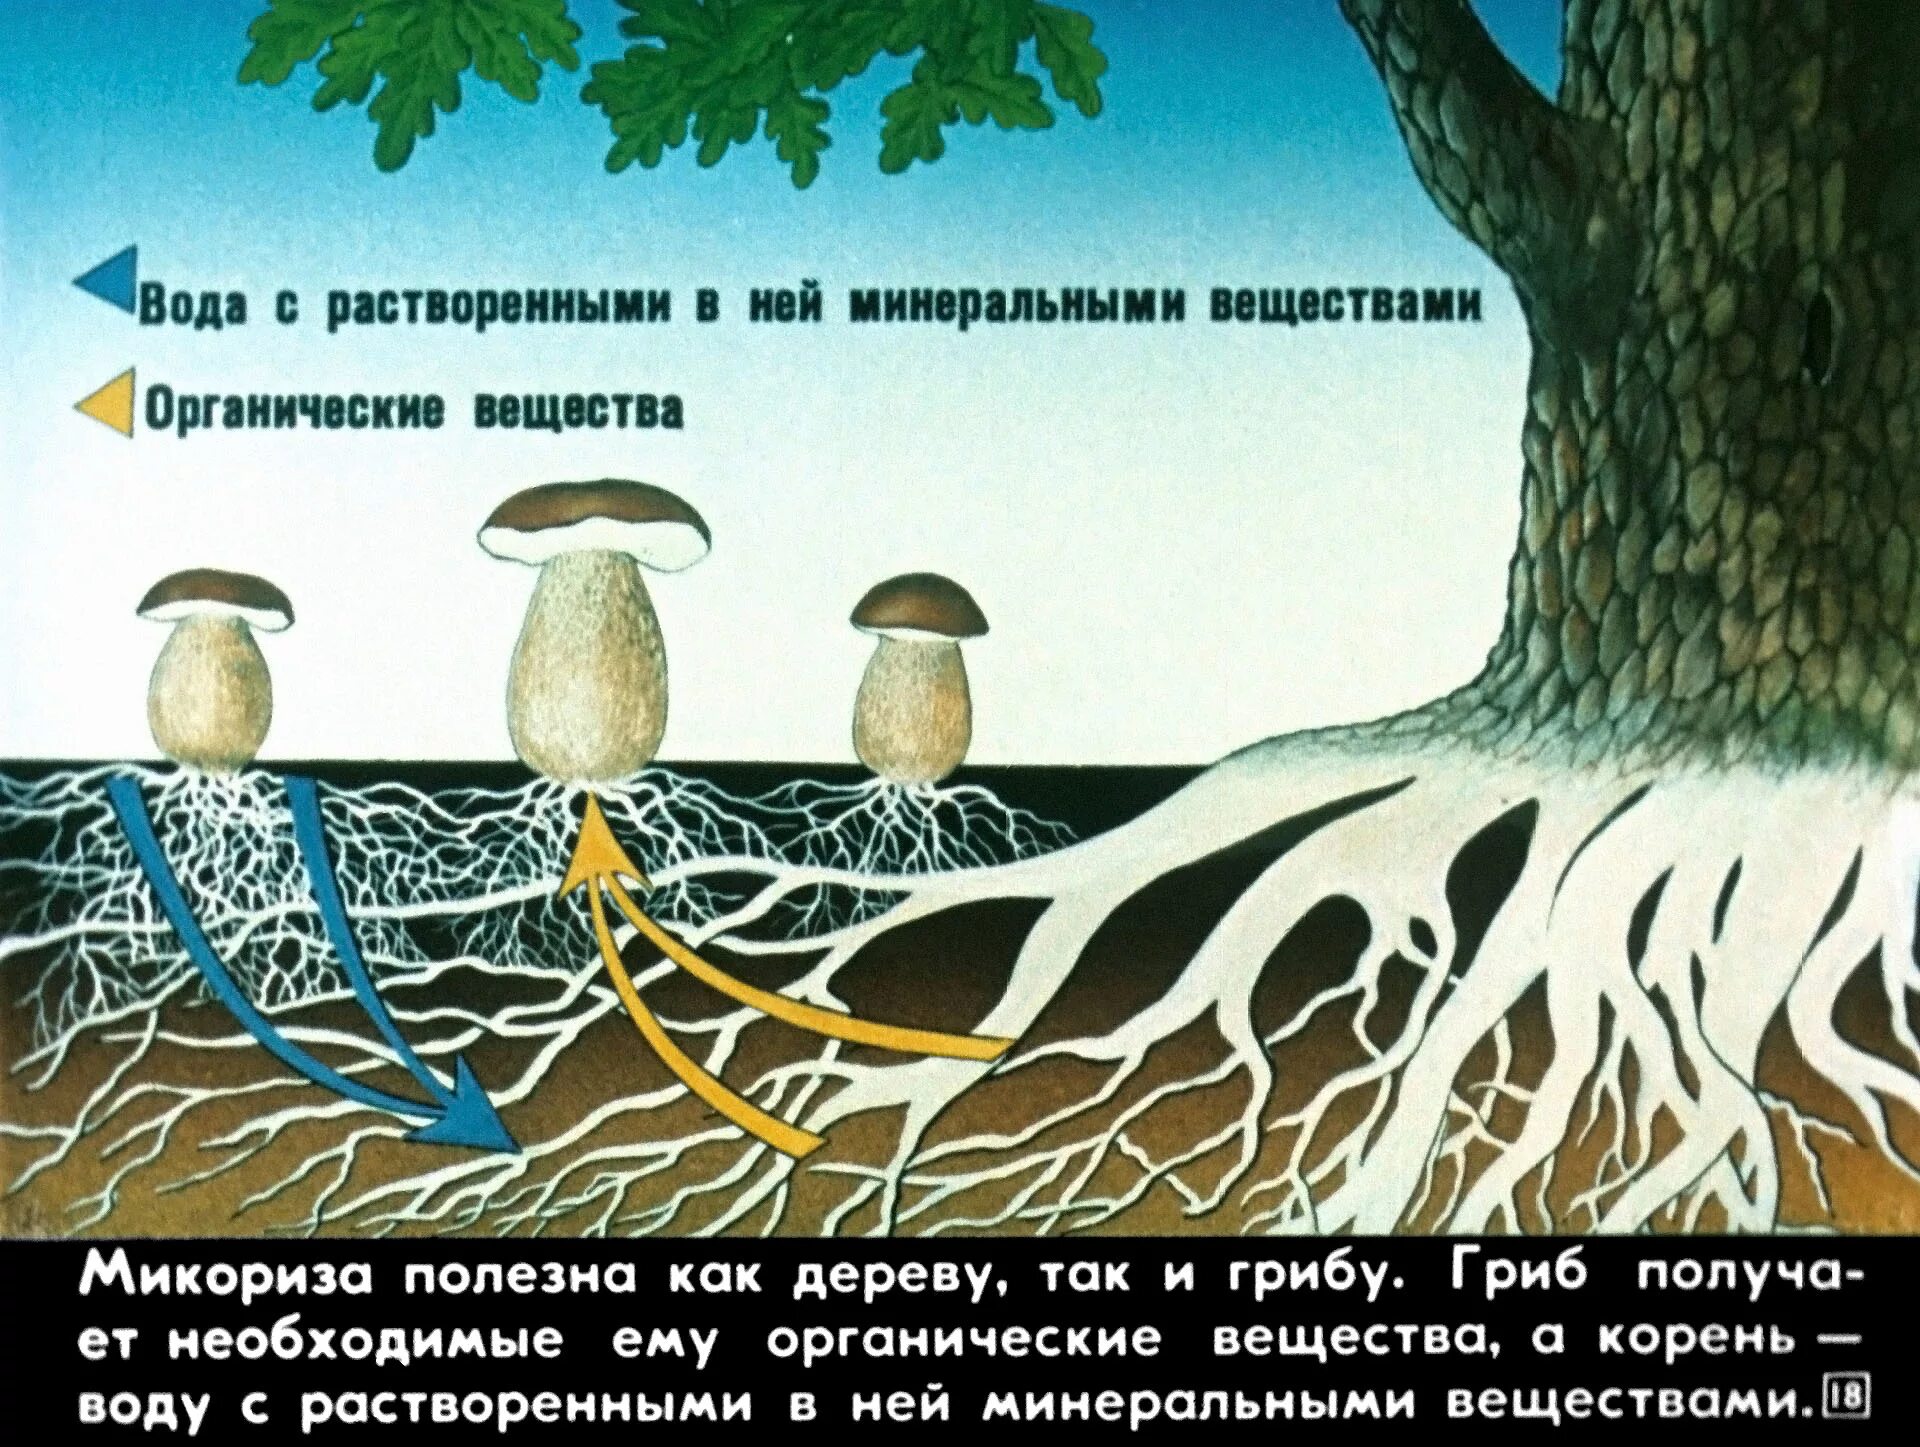 Корни грибов как называется. Схема симбиоза гриба и дерева. Микориза с грибами-симбионтами. Симбиоз гриба и дерева. Взаимосвязь грибов и деревьев.